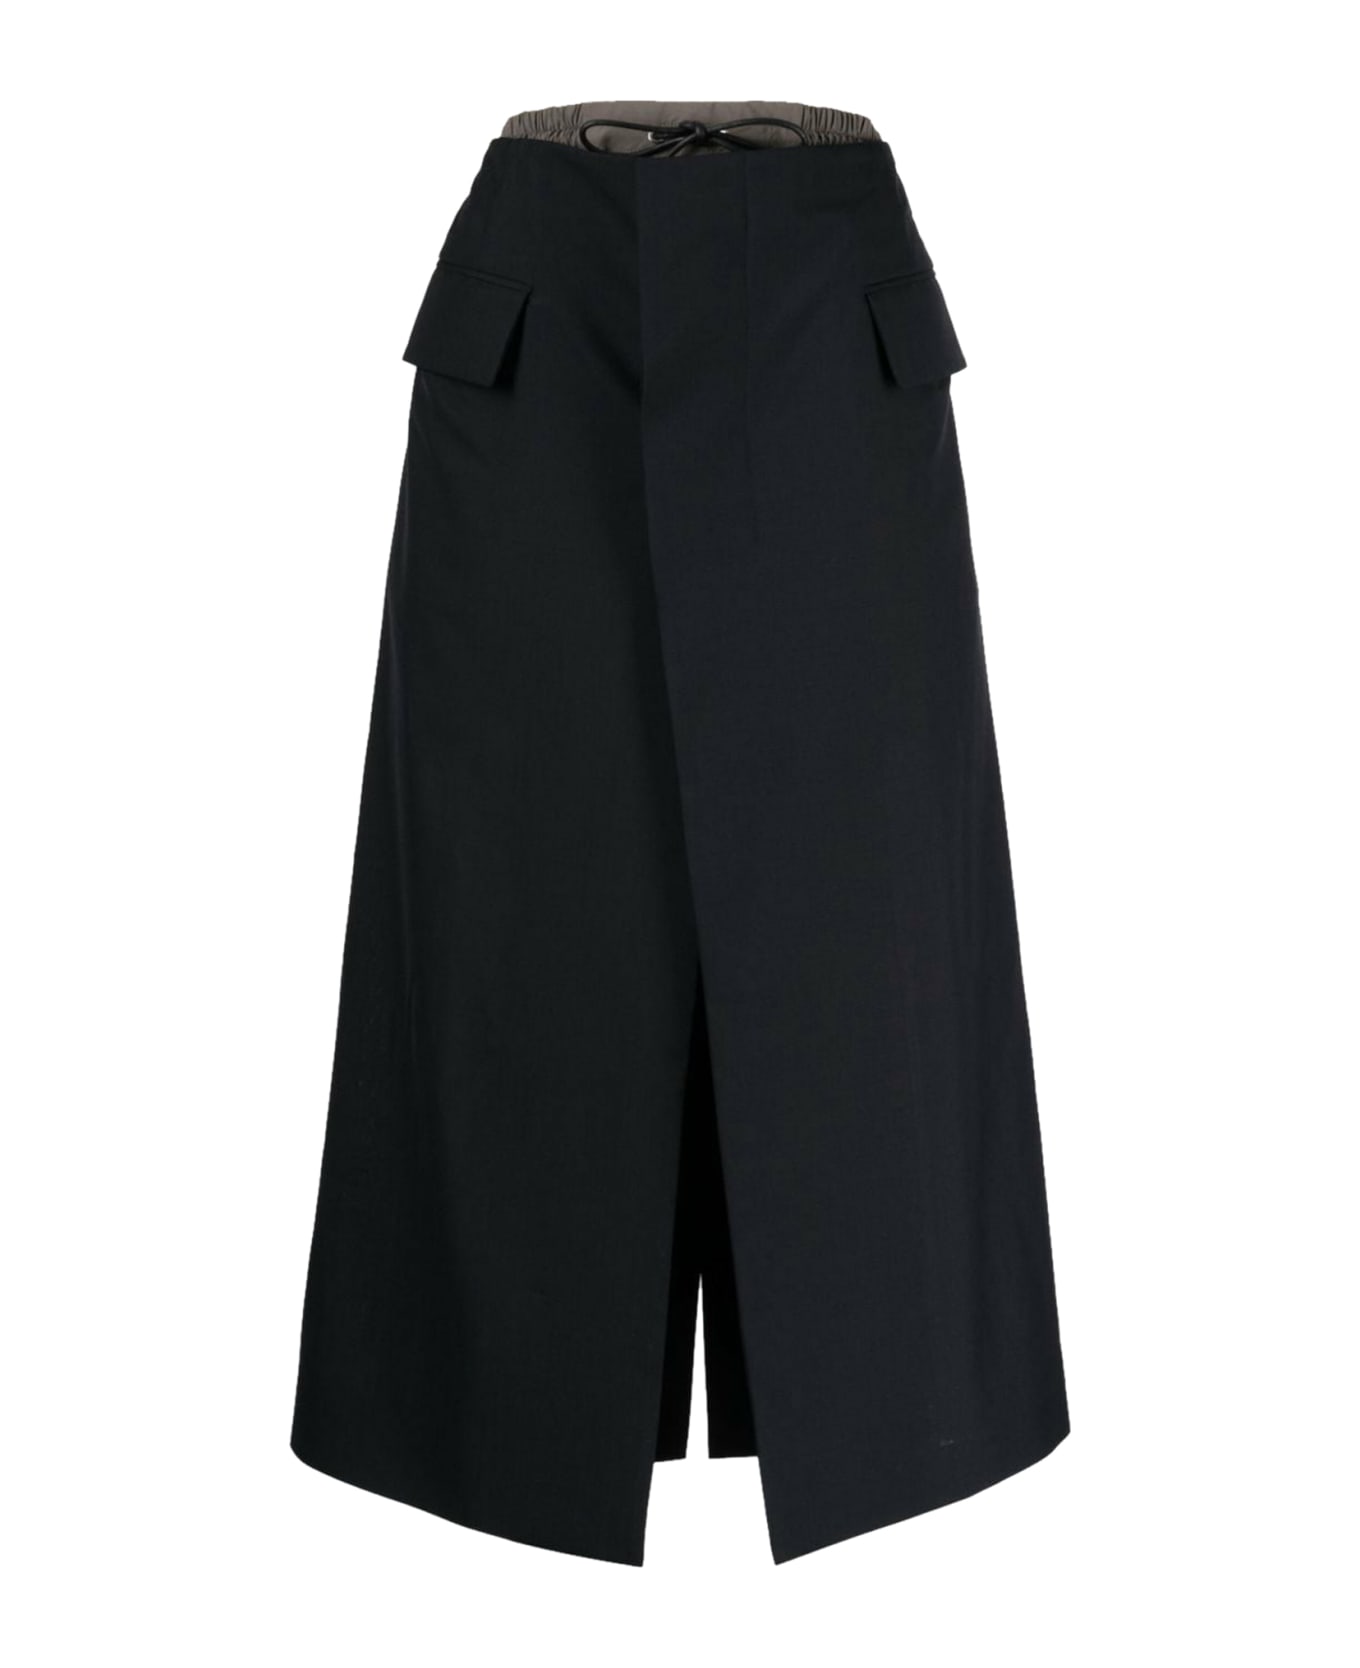 Sacai Suiting Mix Skirt - Navy スカート